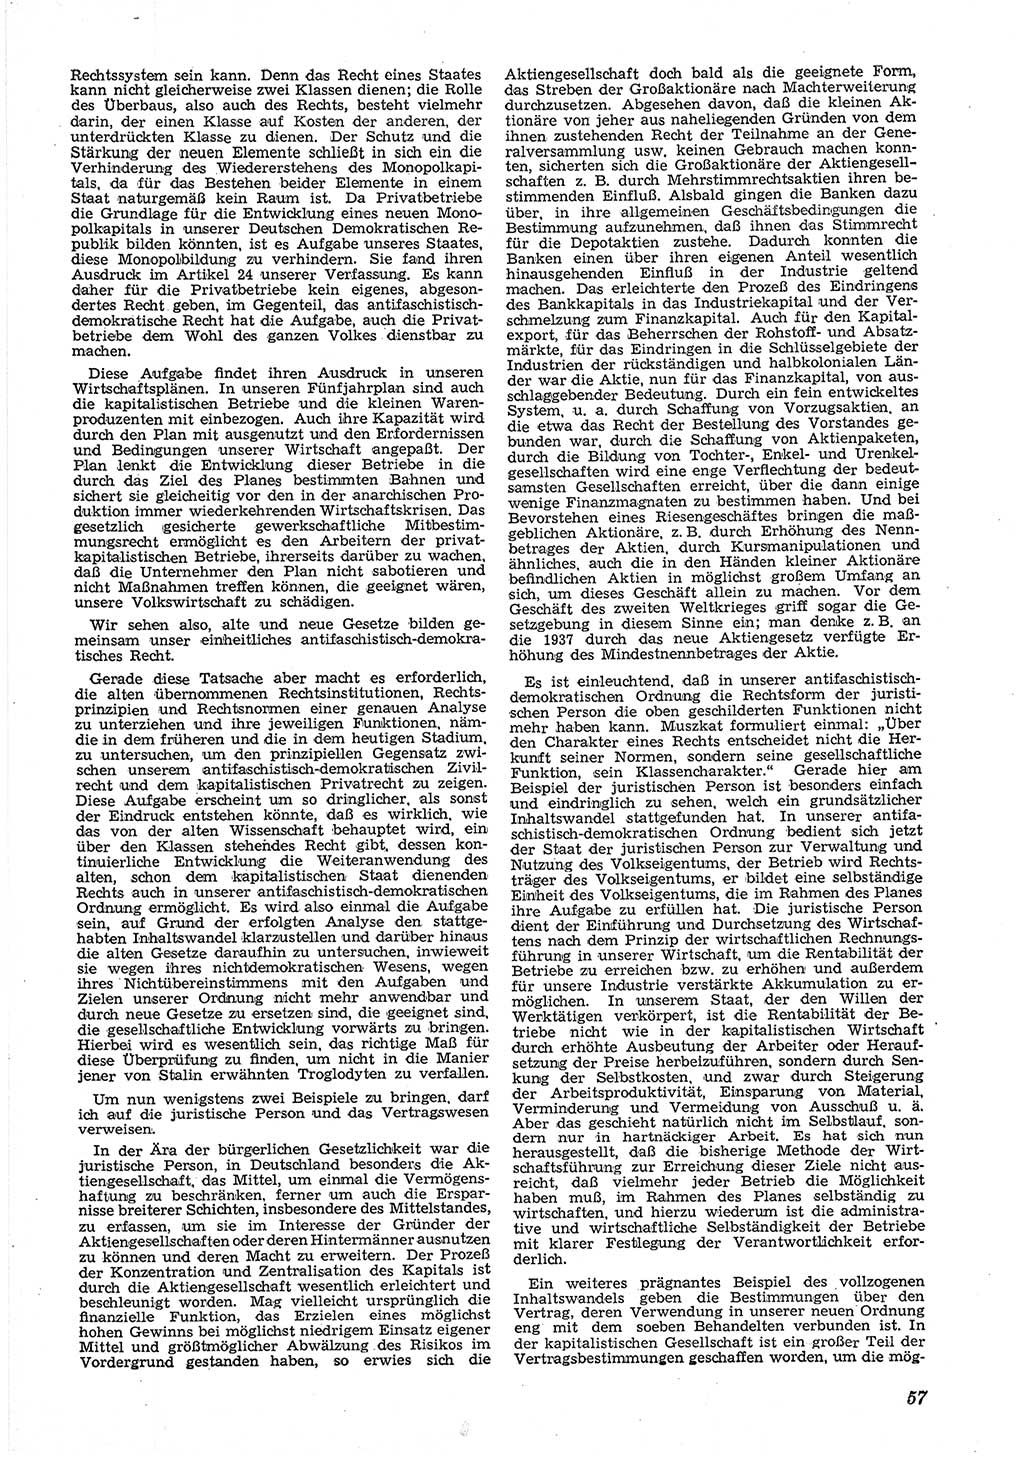 Neue Justiz (NJ), Zeitschrift für Recht und Rechtswissenschaft [Deutsche Demokratische Republik (DDR)], 6. Jahrgang 1952, Seite 57 (NJ DDR 1952, S. 57)